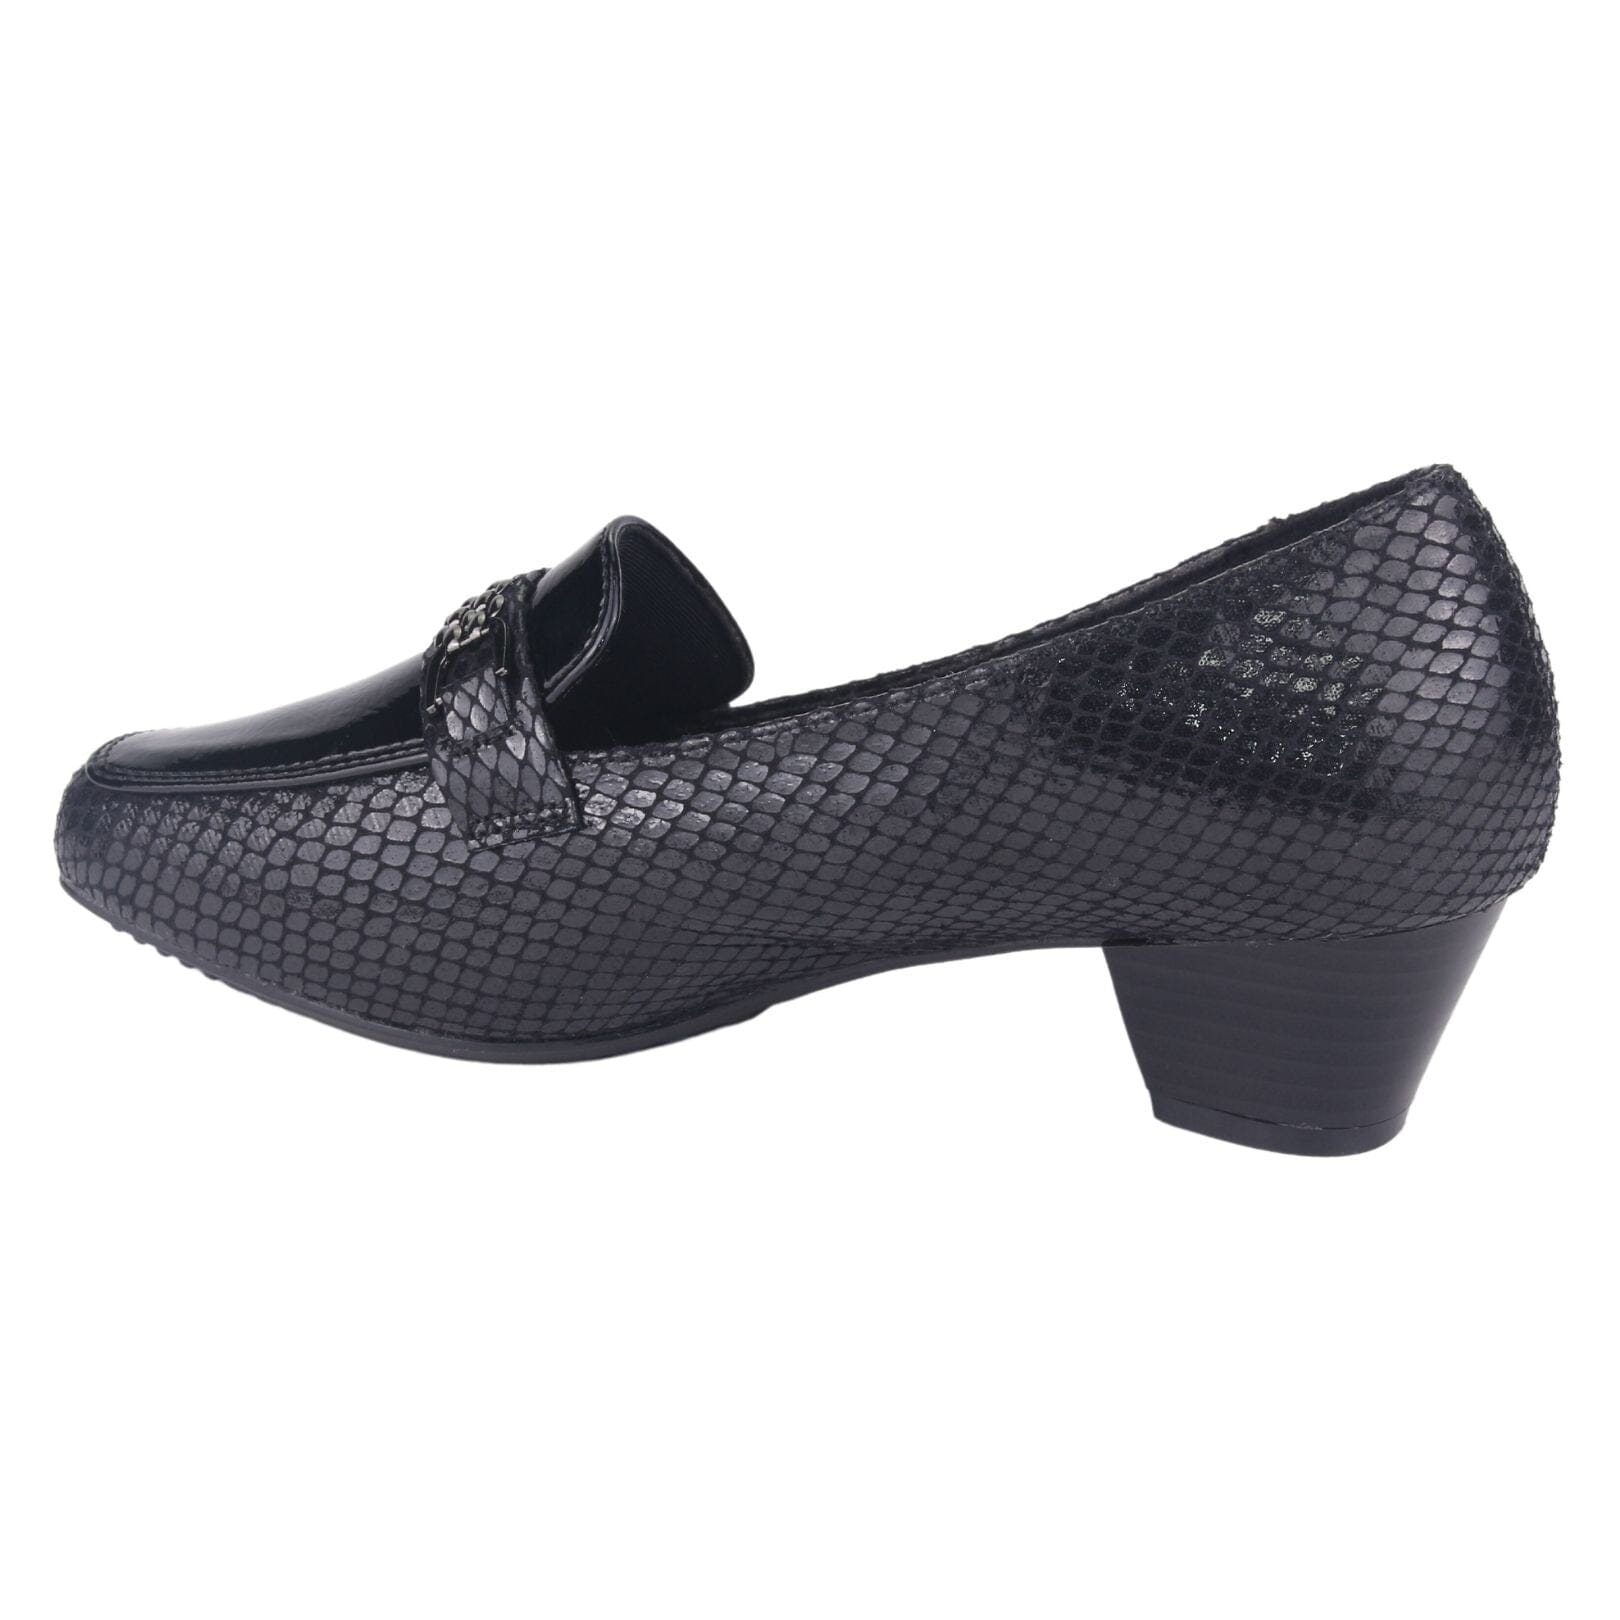 Zapato Chalada Mujer Flexi-3 Negro Casual Tacones Bajos Chalada 